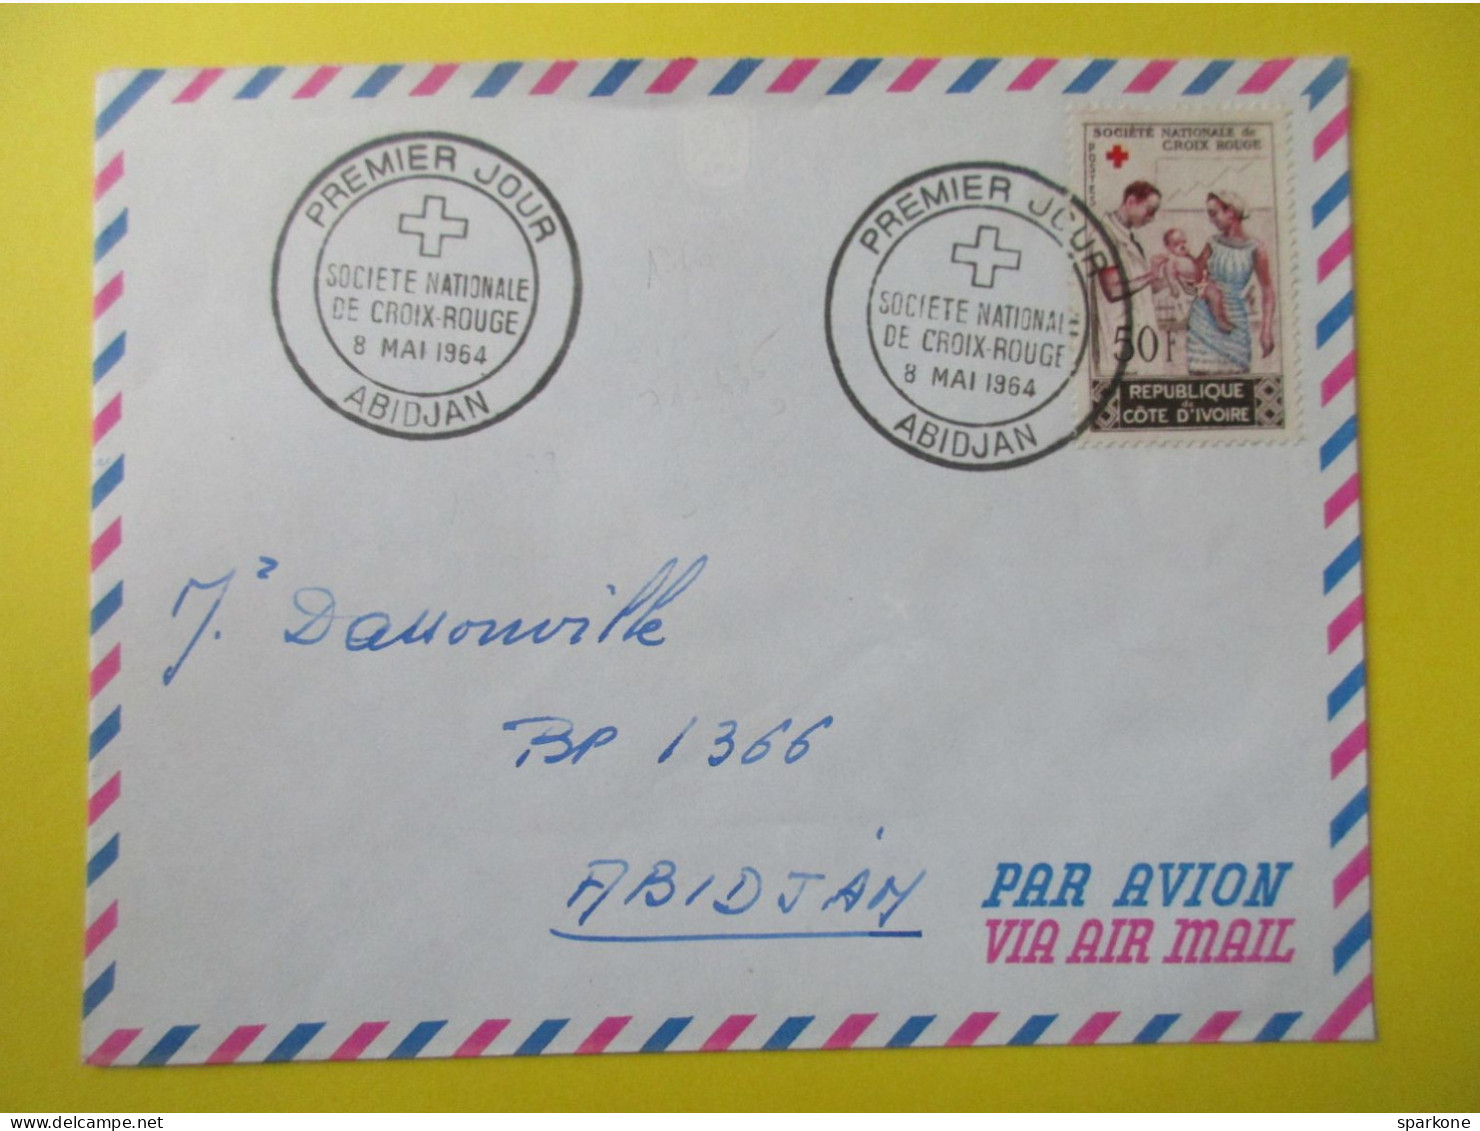 Marcophilie - Enveloppe - République De Côte D'Ivoire - Société Nationale De Croix-Rouge - 1° Jour 1964 - Air Mail - Côte D'Ivoire (1960-...)